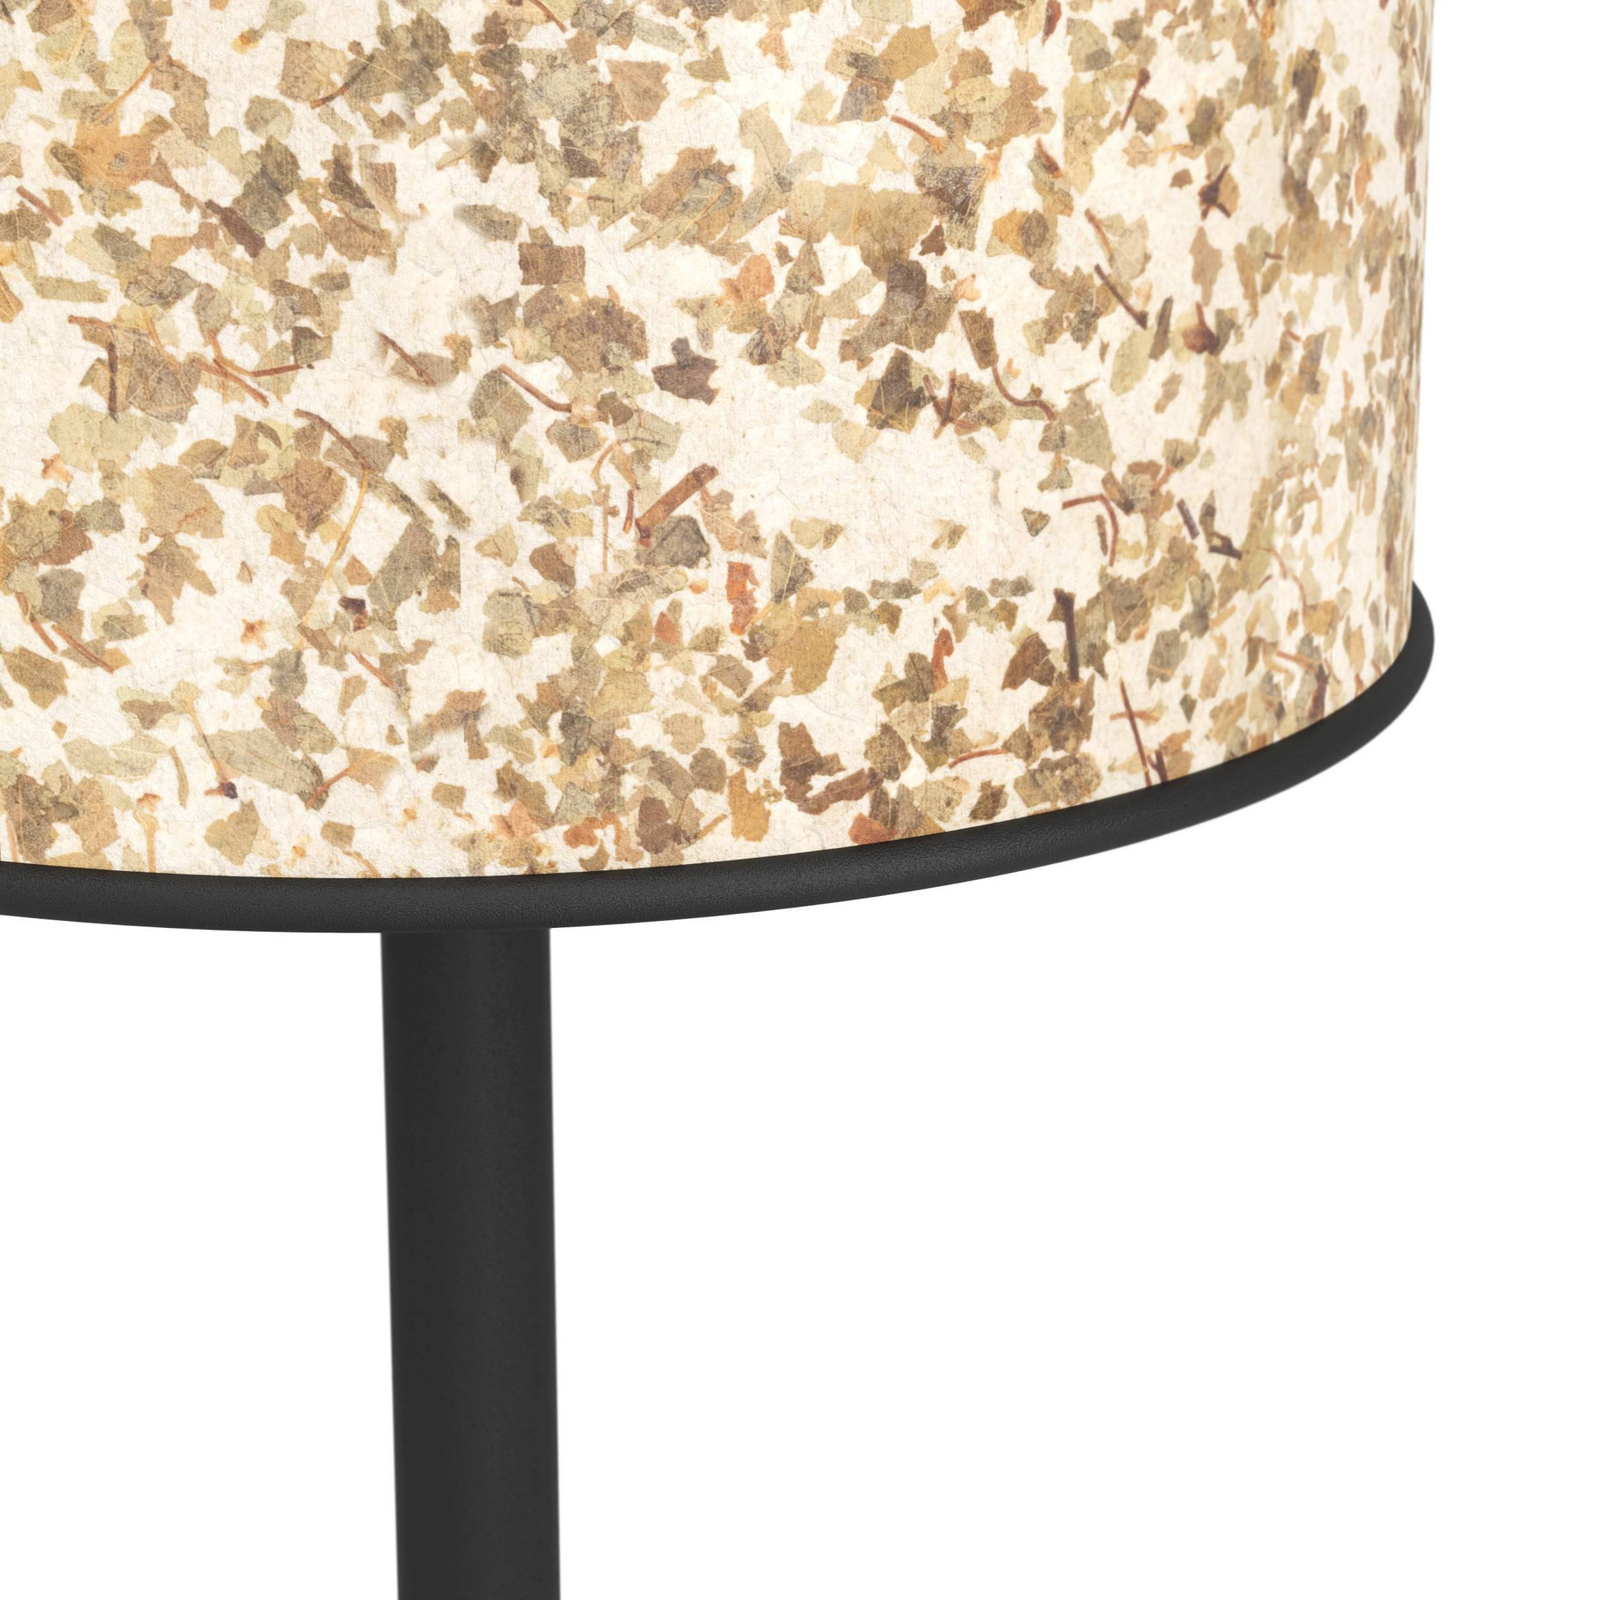 Butterburn bordlampe, høyde 47,5 cm, beige/grønn, stoff